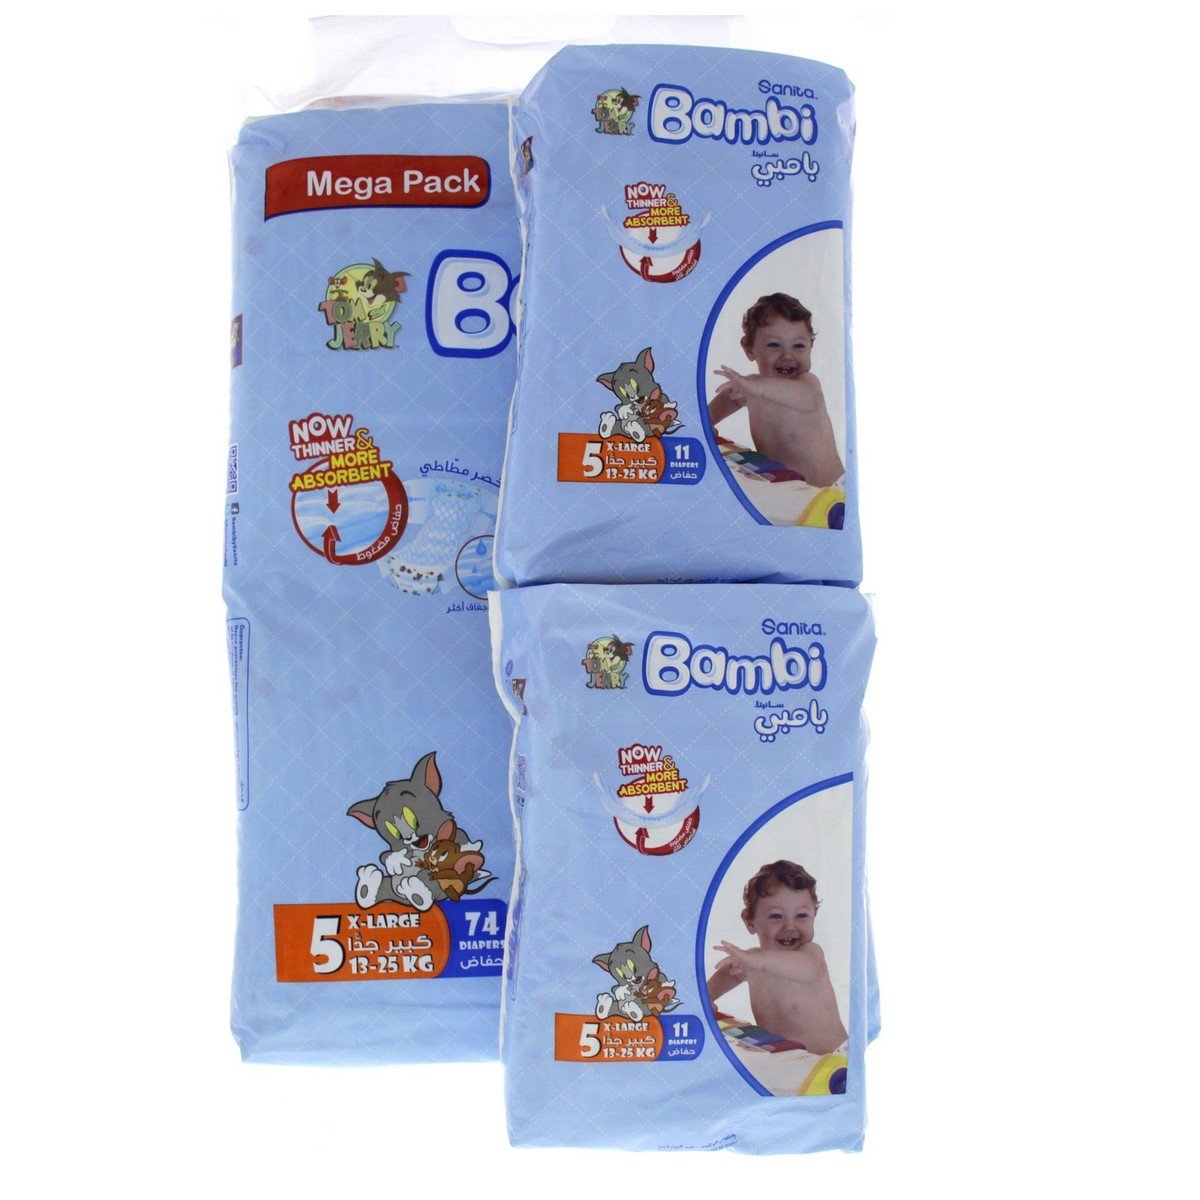 Sanita Bambi Baby Diaper Size 5 Extra Large 13-25kg Mega Pack 74pcs + 2 x 11pcs